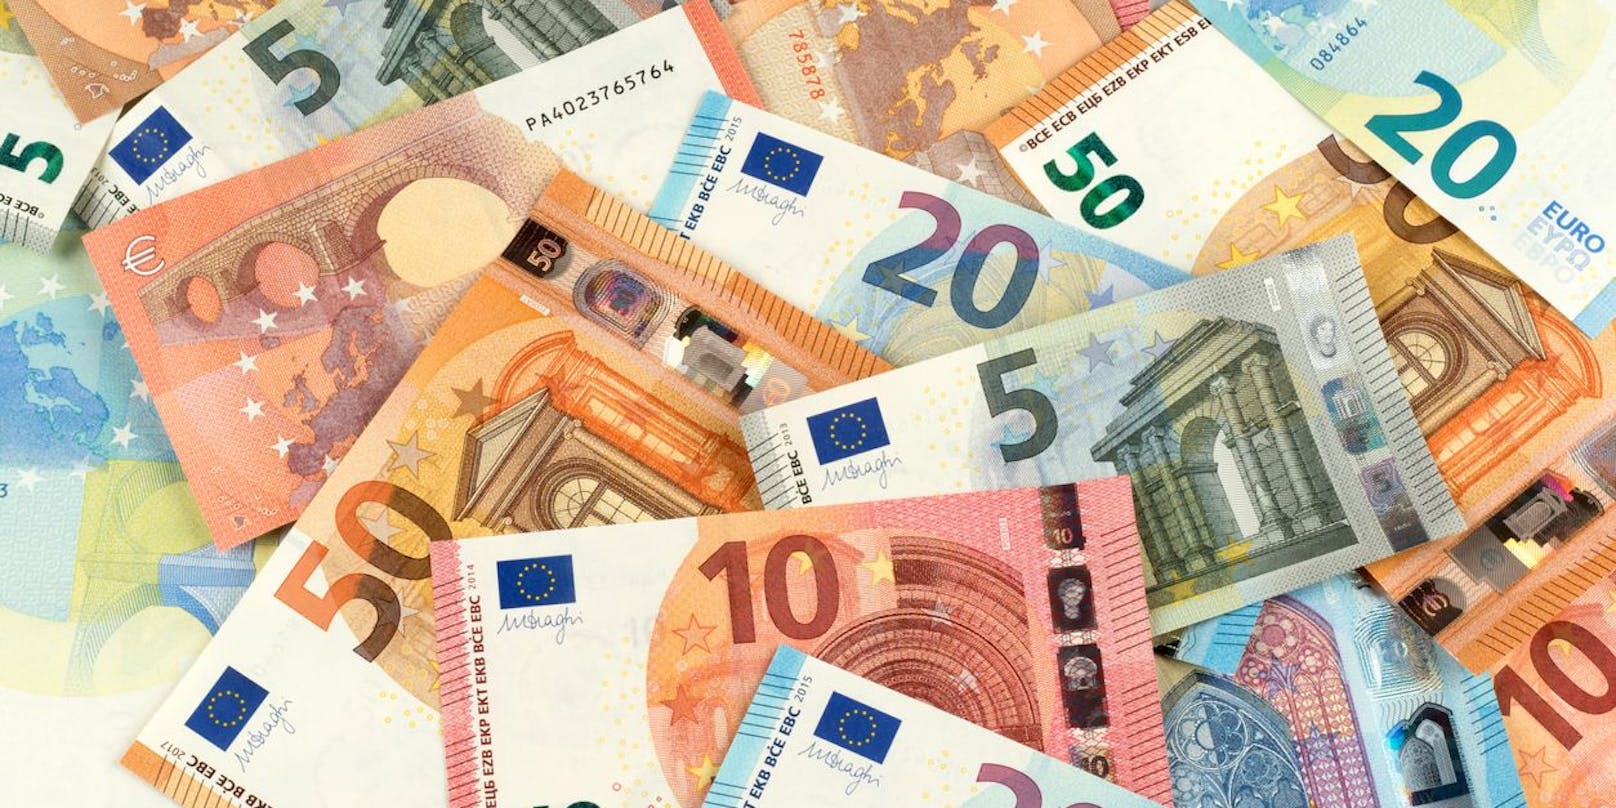 300.000 zufällig ausgewählte Personen erhalten die 500 Euro bereits am Donnerstag.